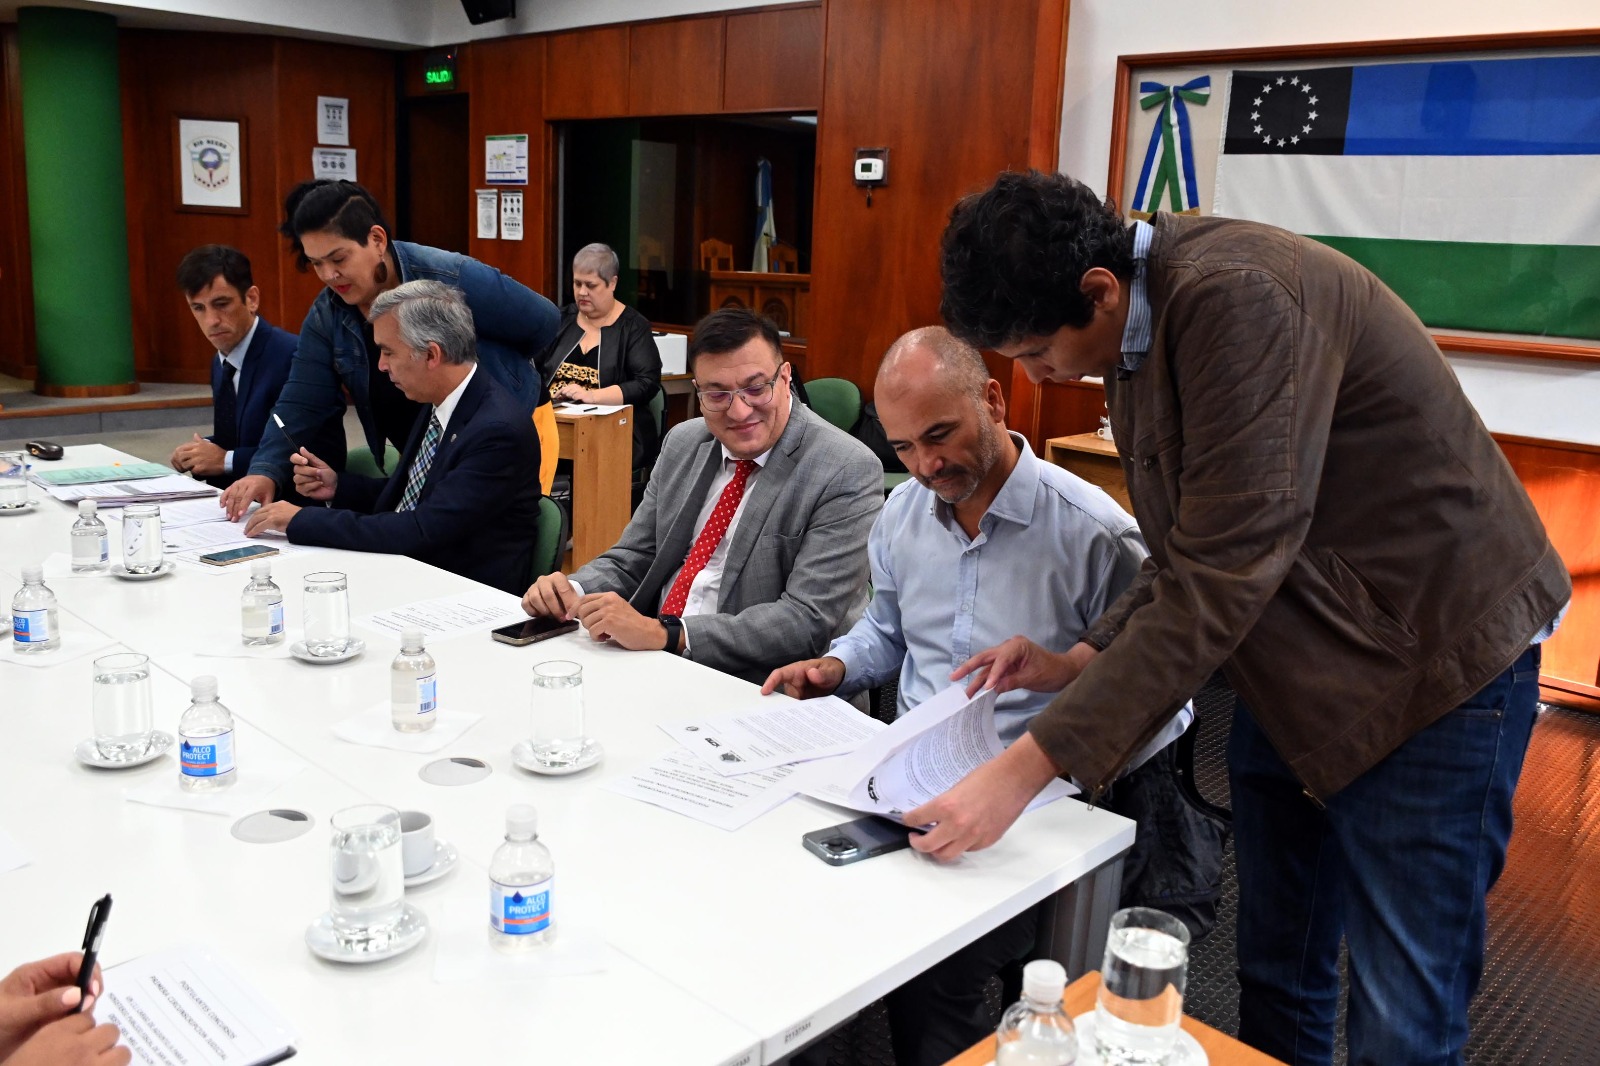 Dirigentes de Sitrajur realizaron la entrega durante la reunión del Consejo de la Magistratura. Foto: Marcelo Ochoa.